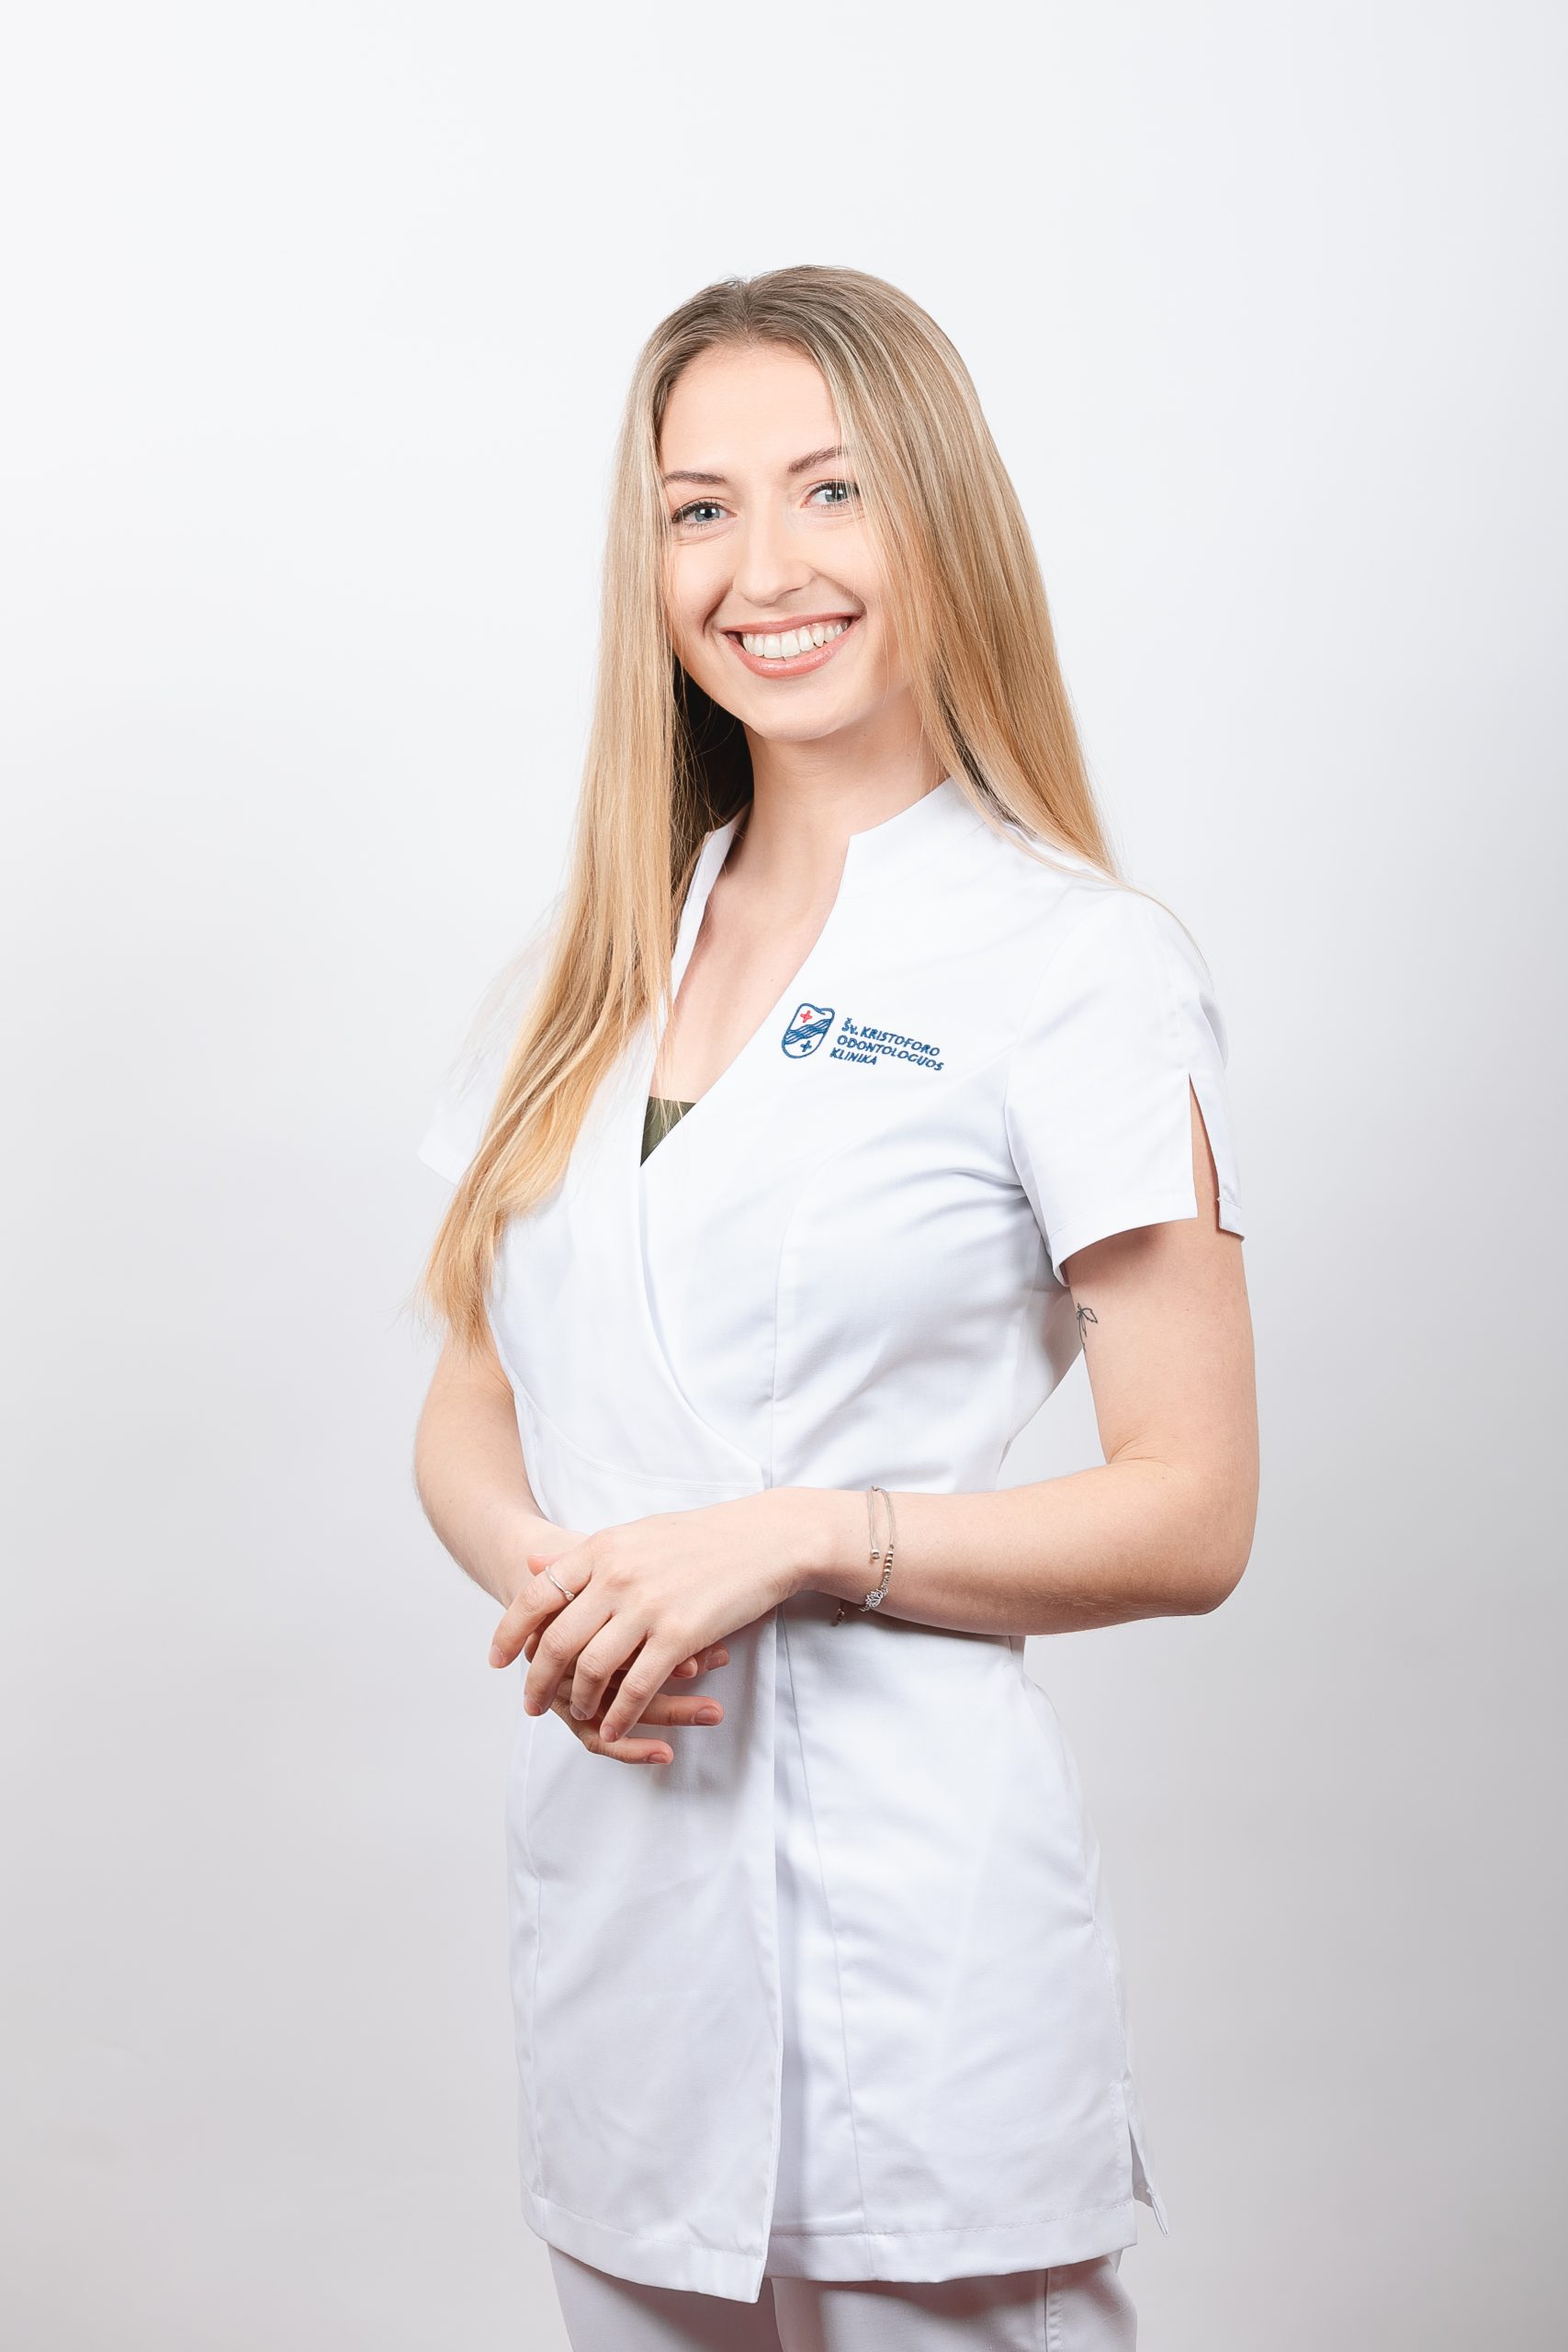 Gydytoja odontologė Elena Adamonytė